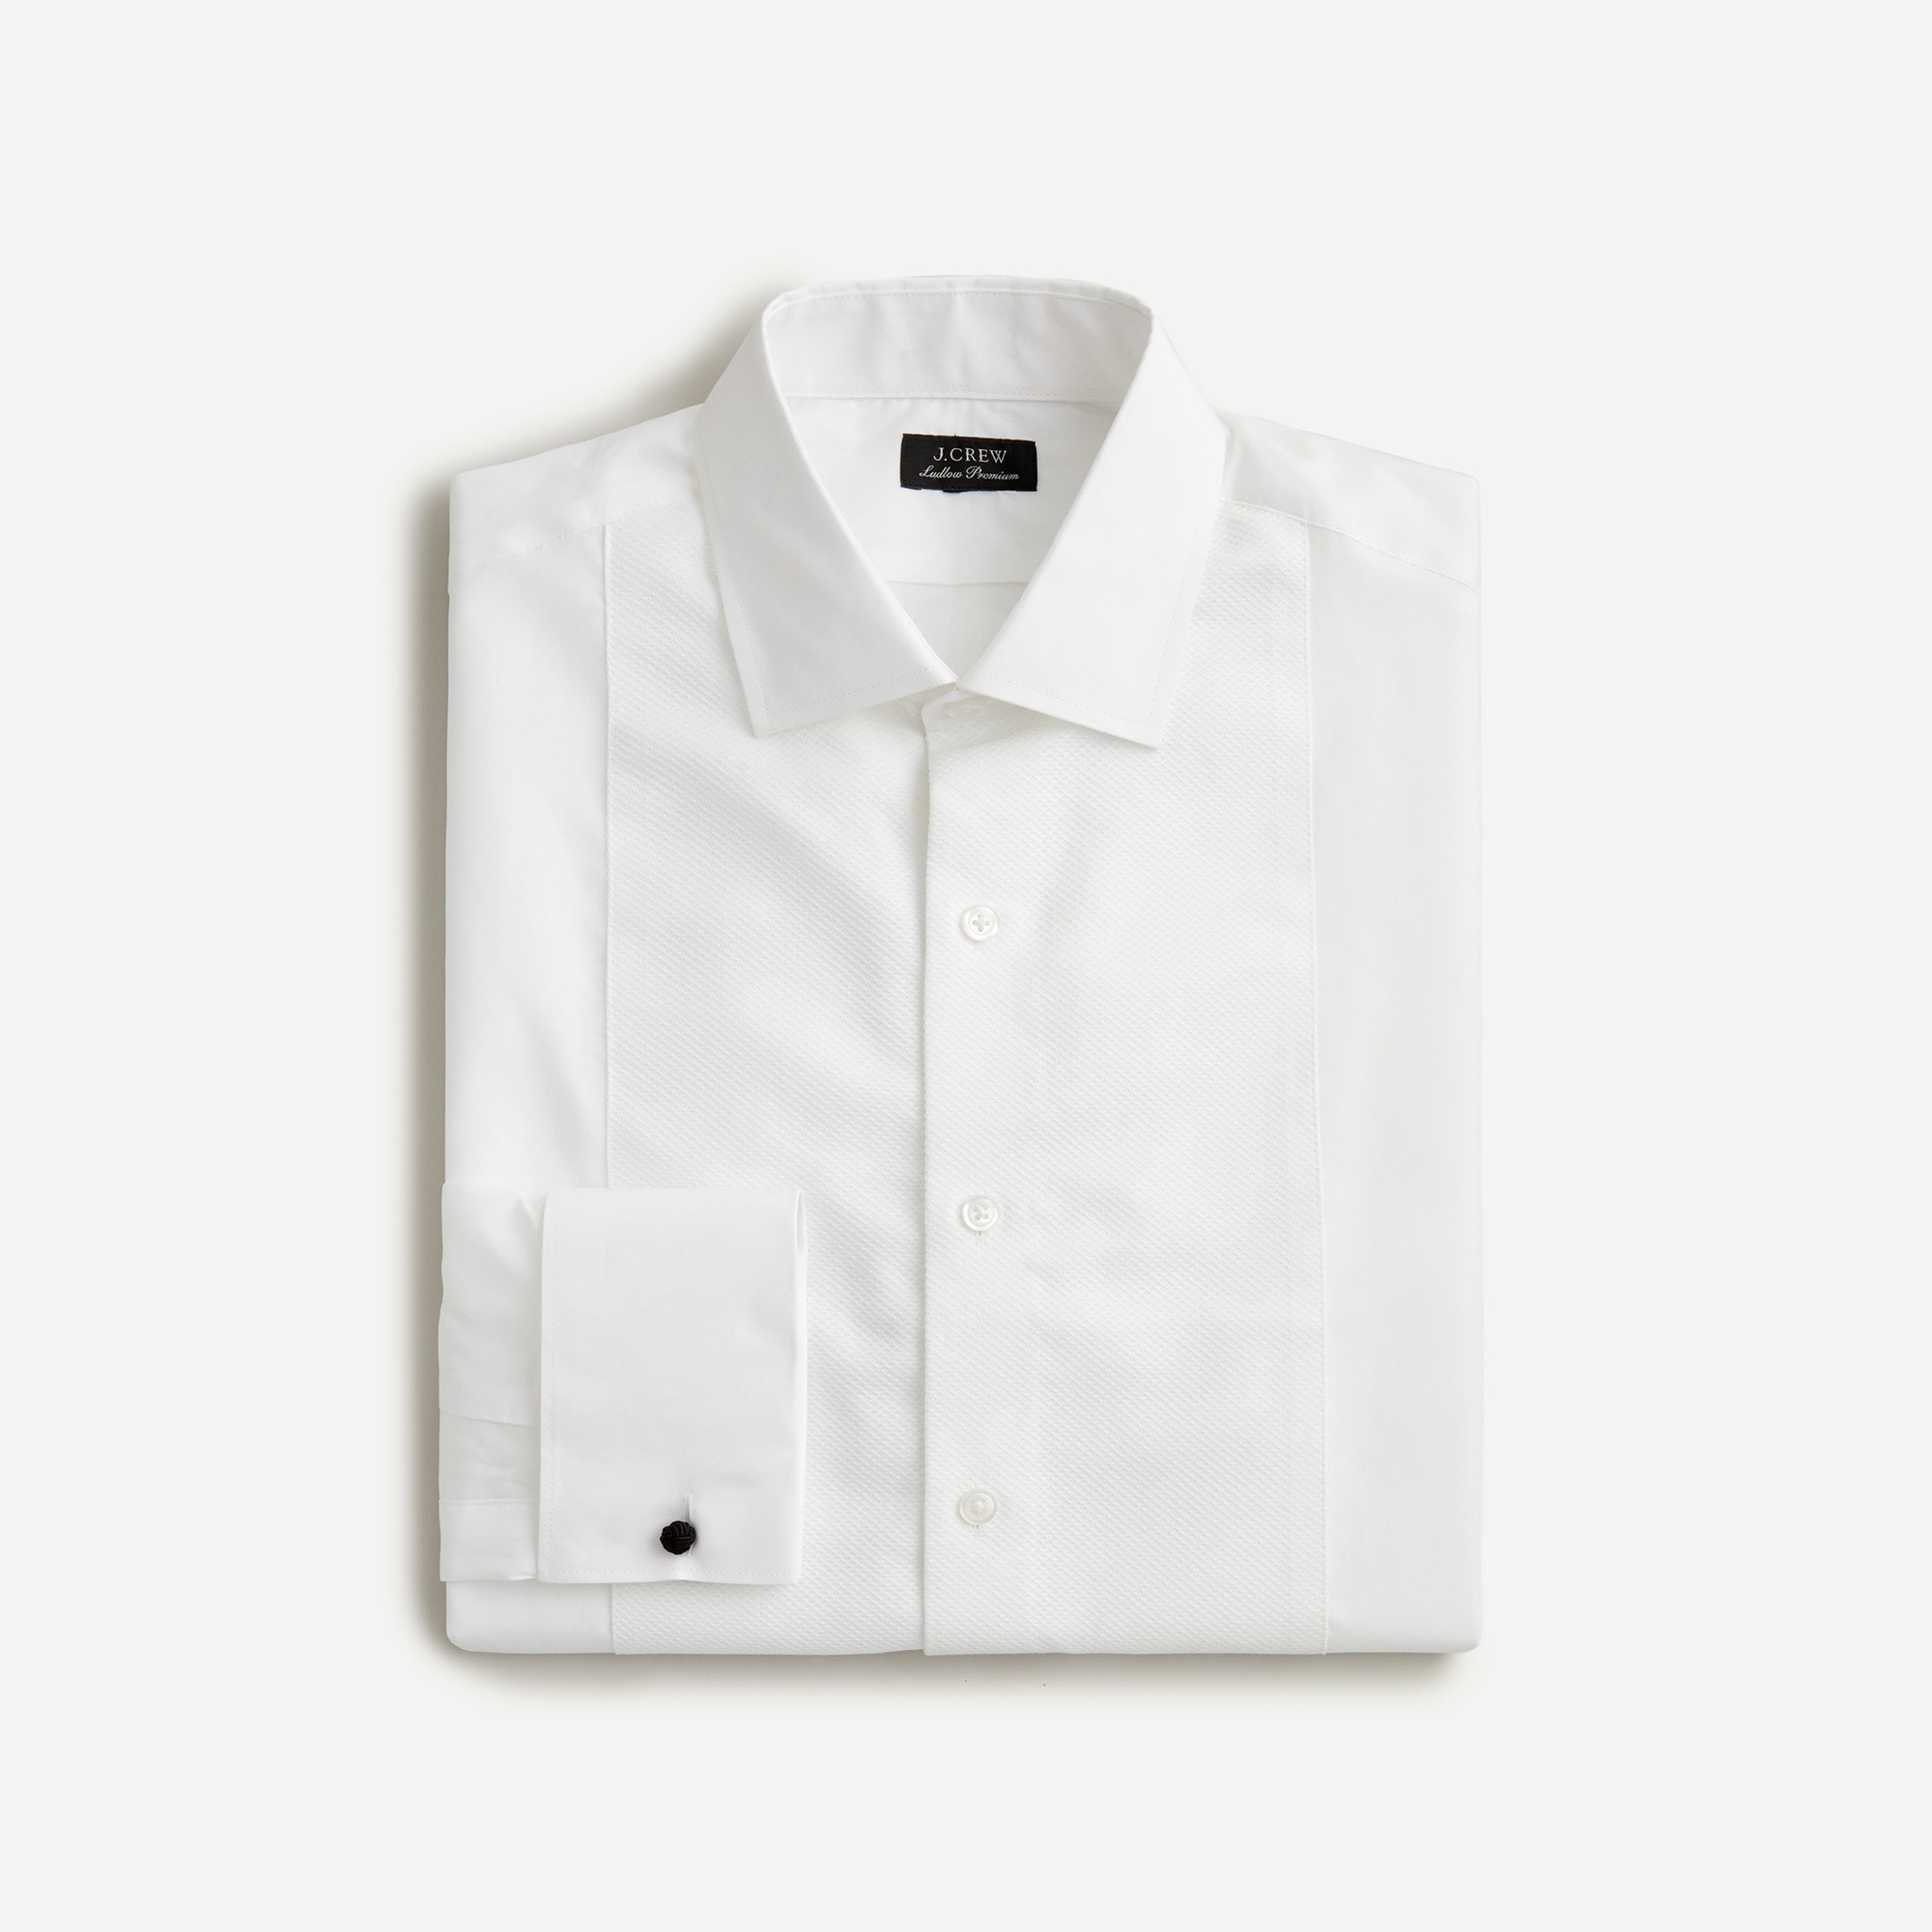  Ludlow Slim-fit premium fine cotton tuxedo shirt